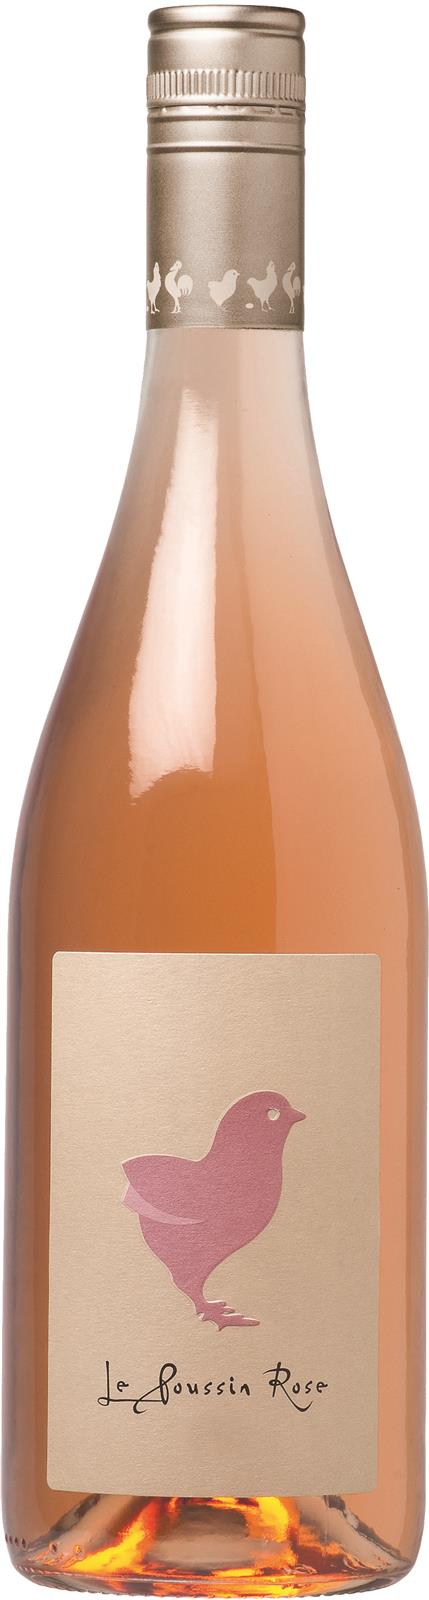 Совиньон сухое розовое. Саша Лишин вино. Вино розовое сухое. Вино Ле Классик де Вантенак Розе розовое сухое. Французское розовое вино сухое.